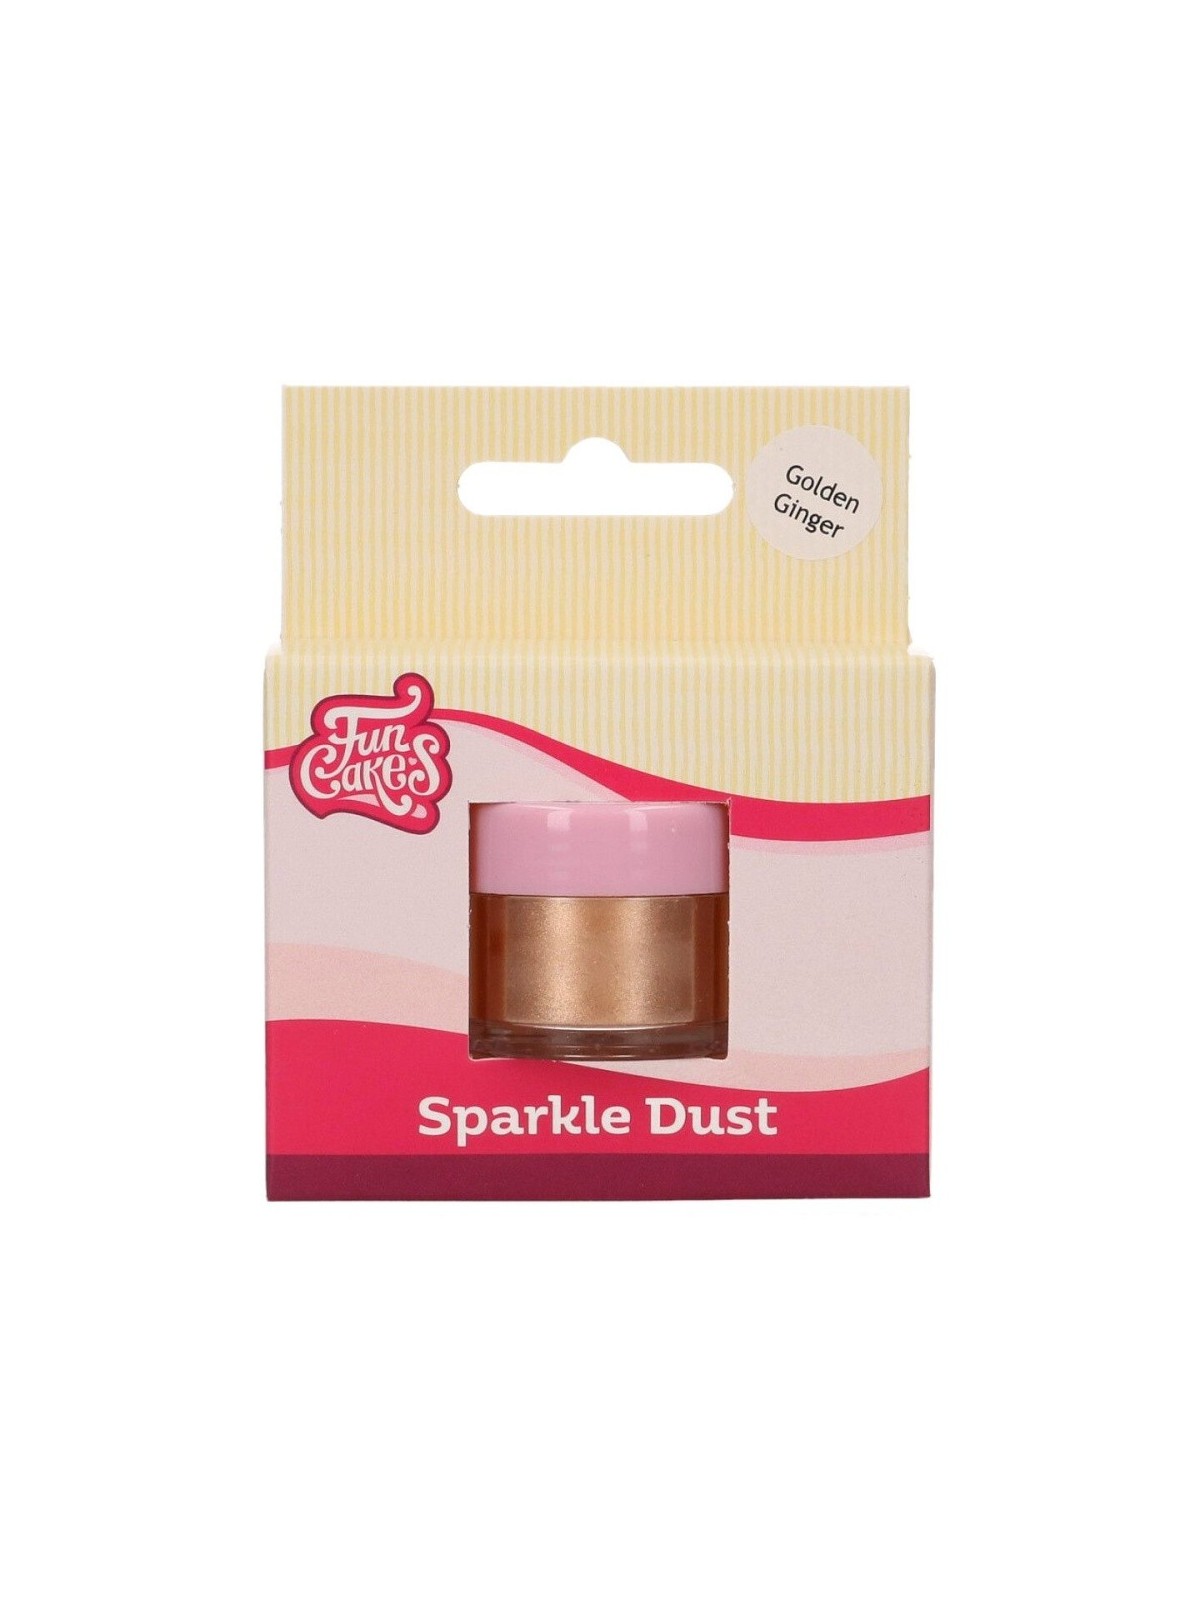 FunCakes Sparkle Dust -  Golden Ginger